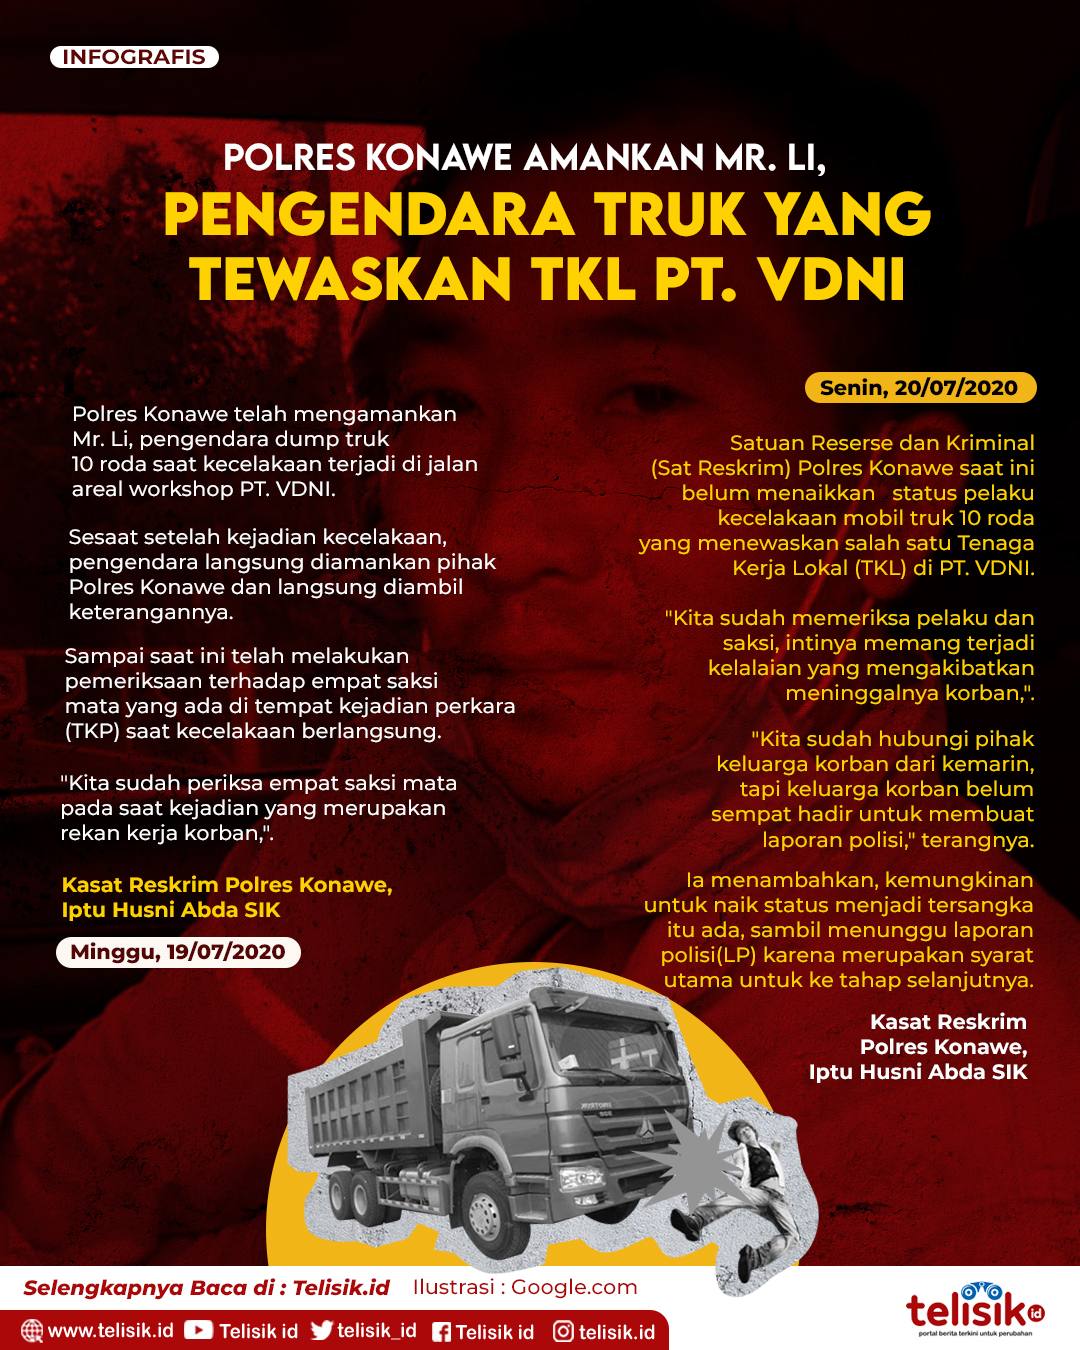 Infografis: Polres Konawe Amankan Mr Li Pengendara Truk yang Tewaskan TKL PT VDNI